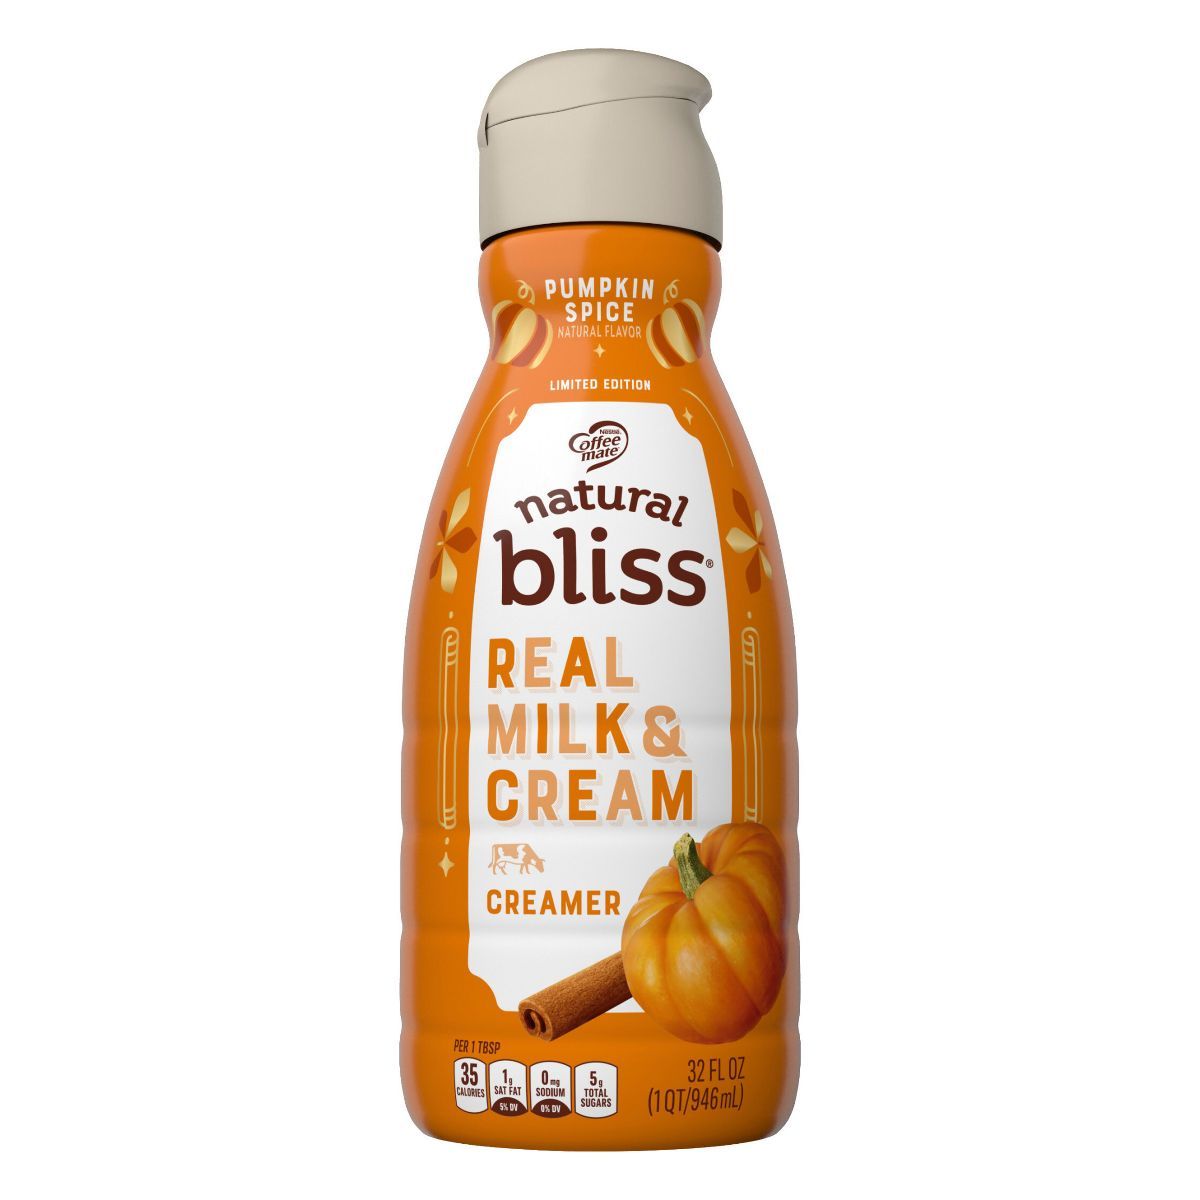 Coffee mate Natural Bliss Pumpkin Spice Creamer - 1qt | Target